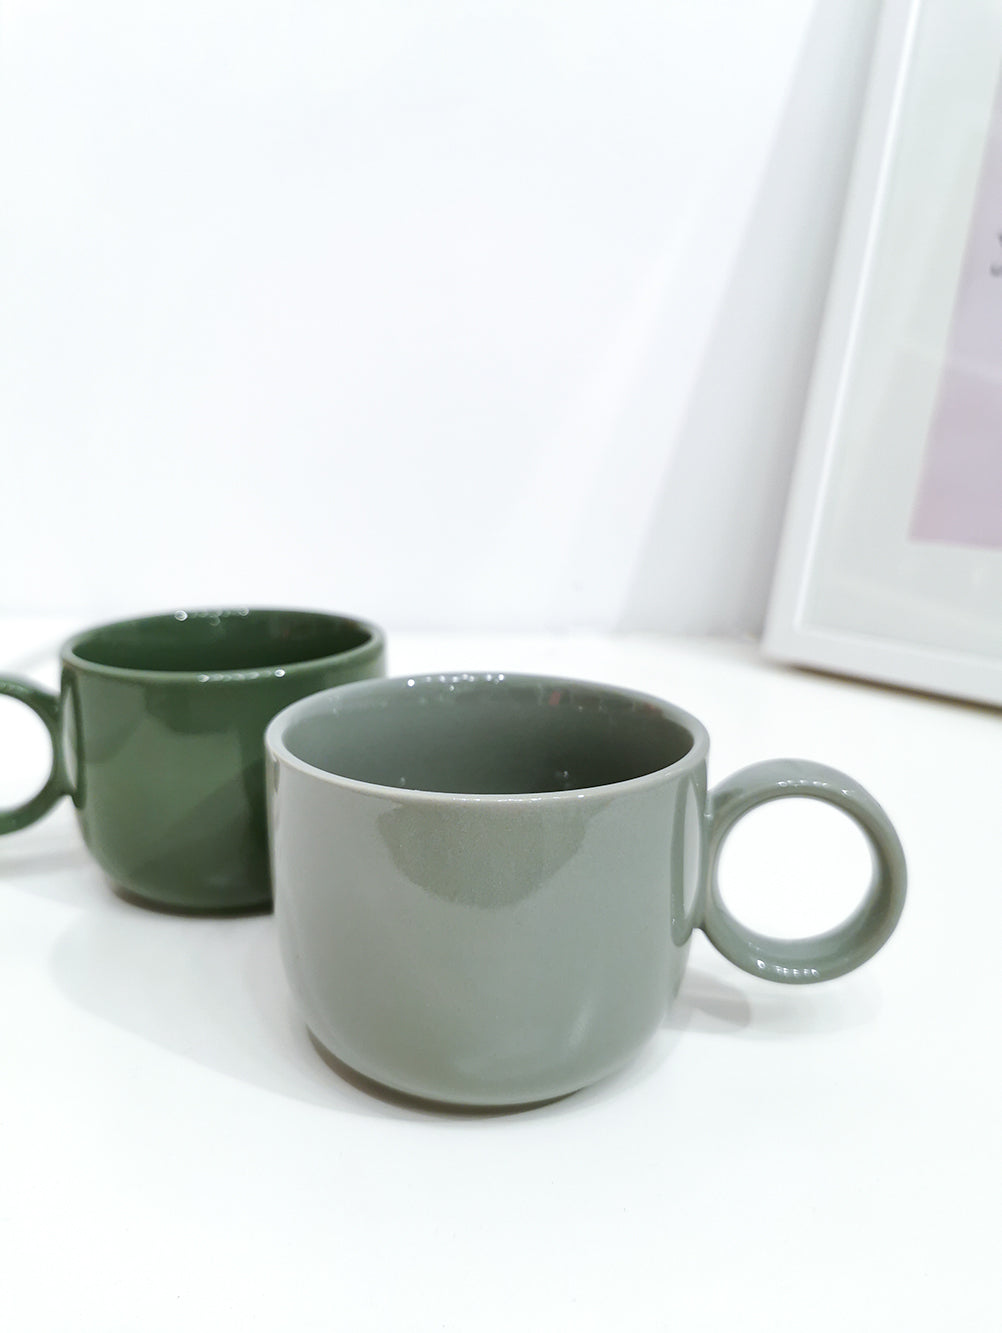 250ml Morandi Mug - Grey - Gifts by Art Tree